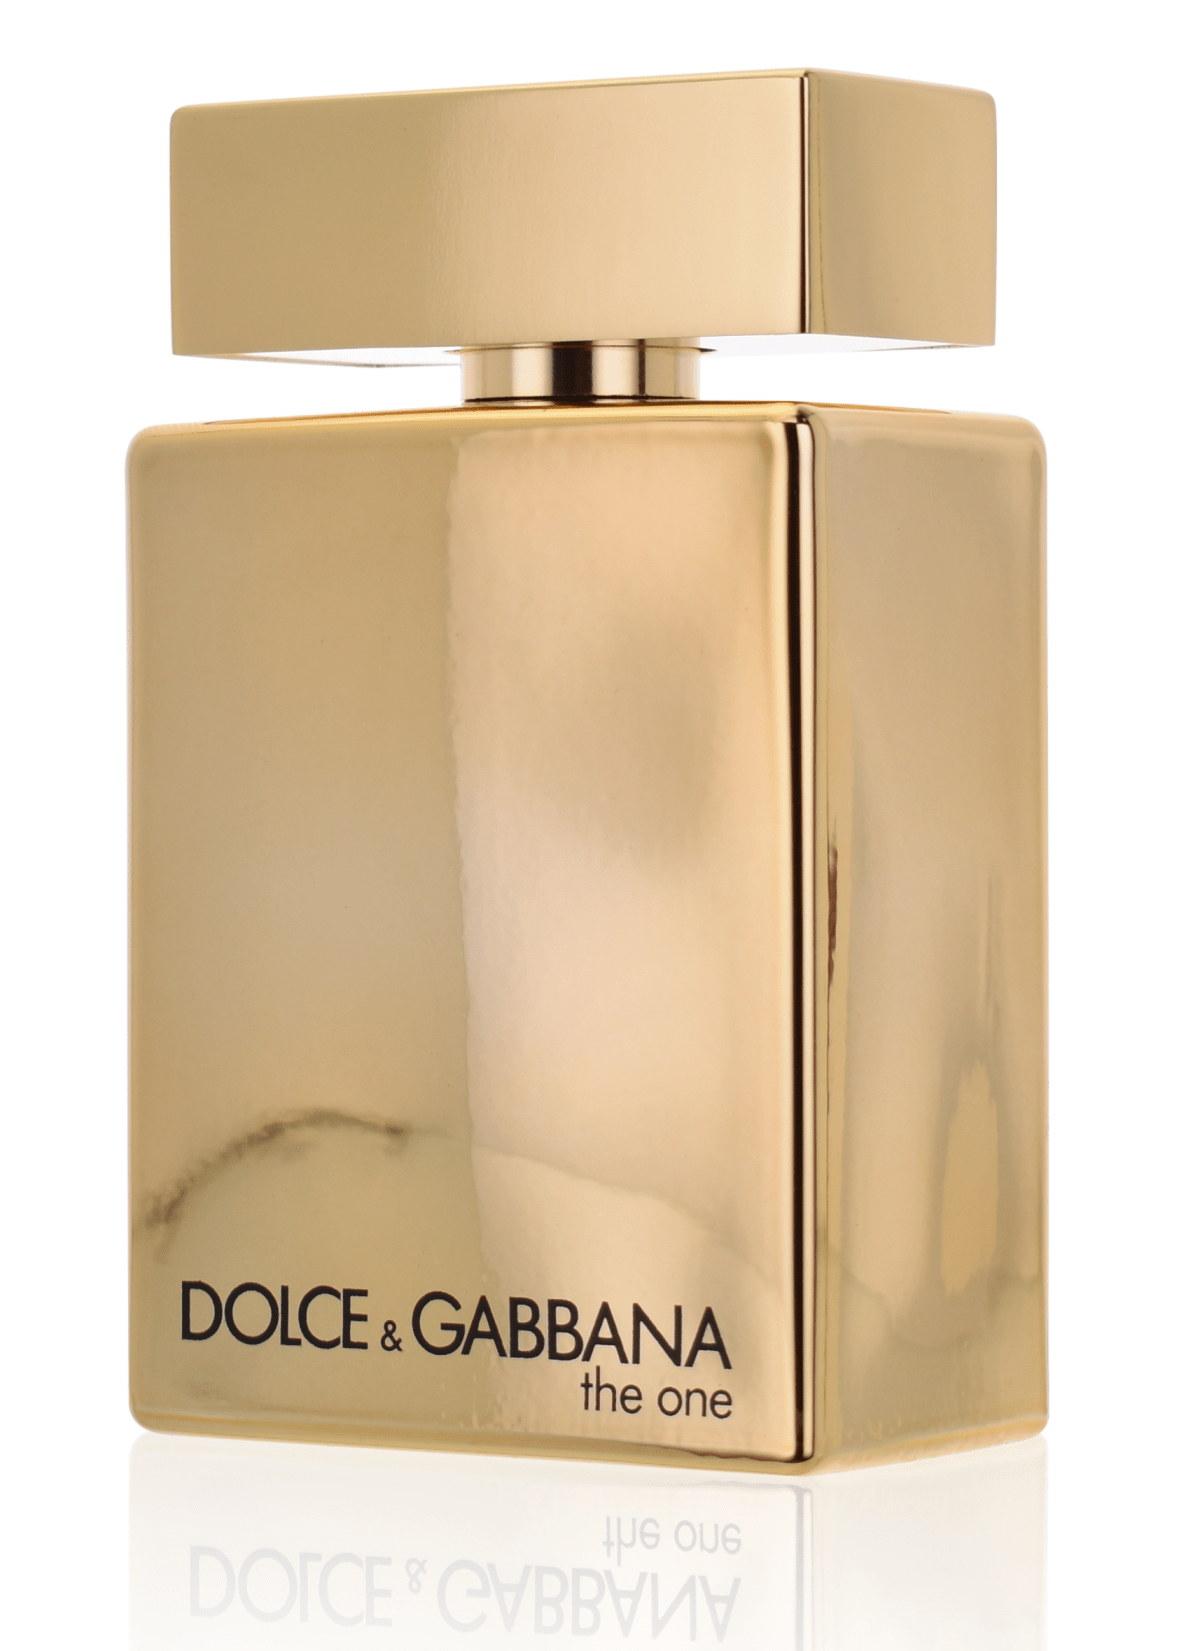 Dolce & Gabbana The One for Men Gold 100 ml Eau de Parfum Intense Tester